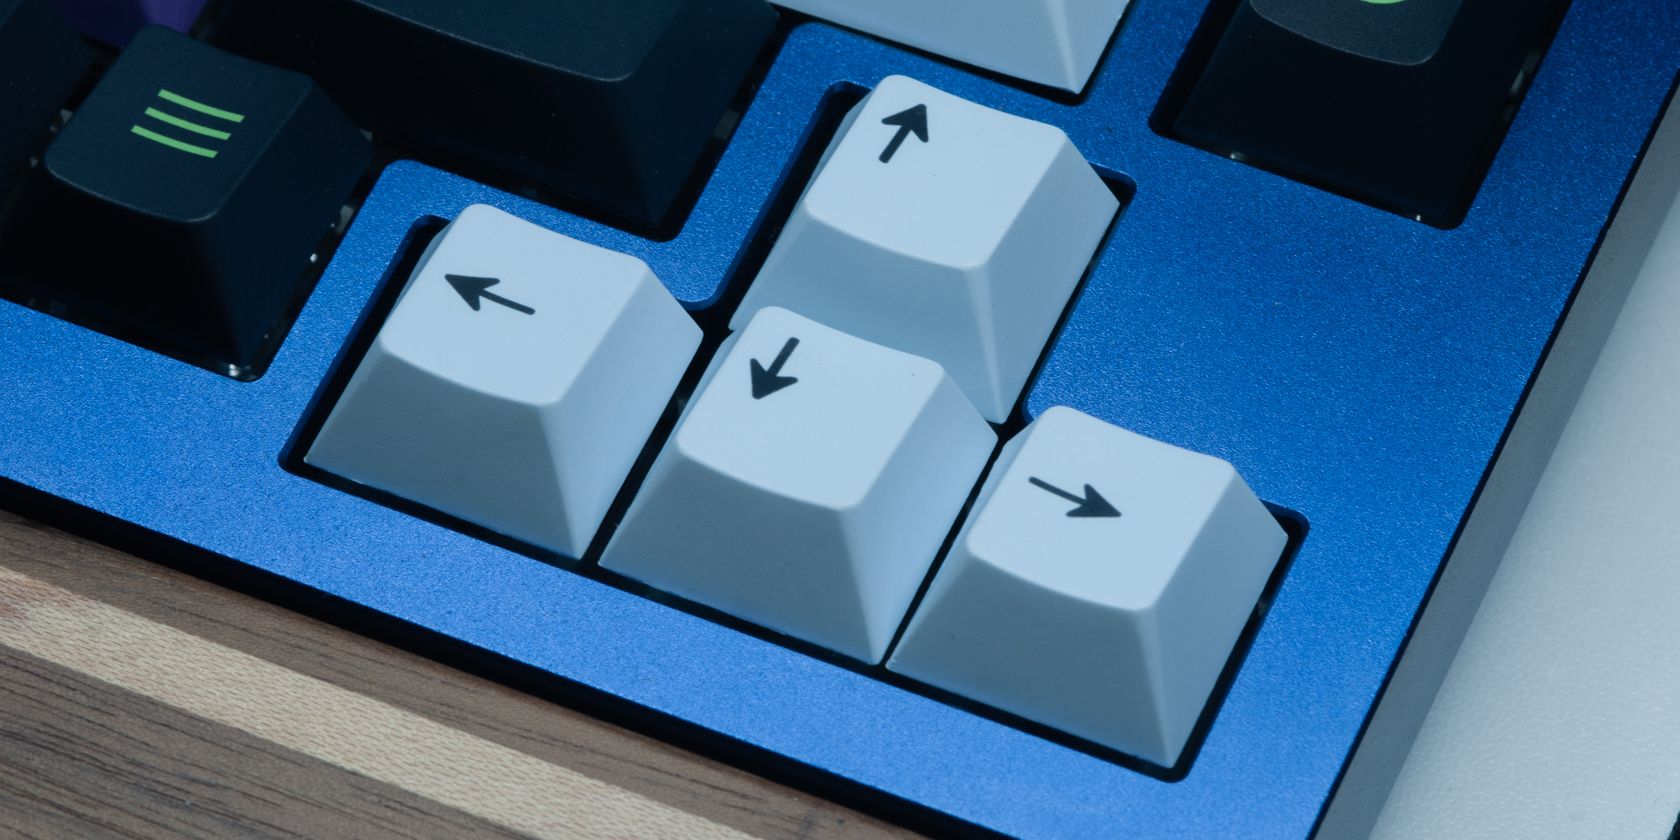 blue keyboard arrow keys